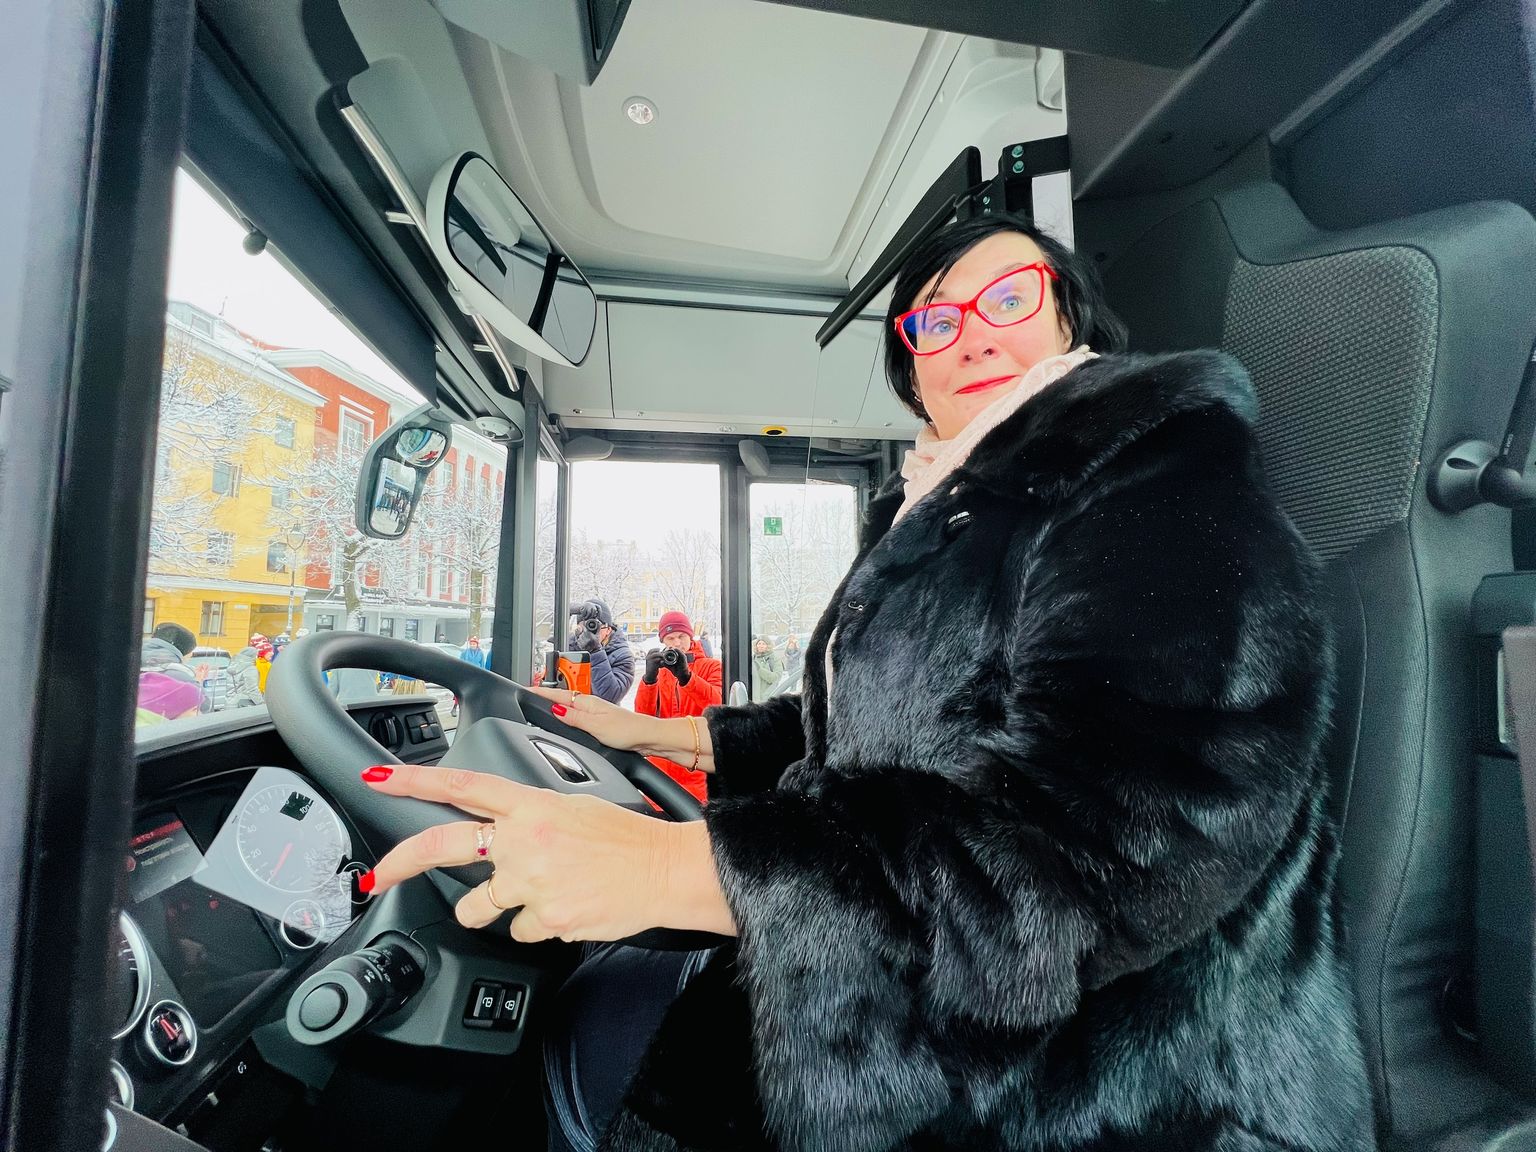 Мэр Нарвы Катри Райк 28 января как ни в чем не бывало принимала новые автобусы для городских линий, хотя накануне получила удар под дых от политической оппозиции.